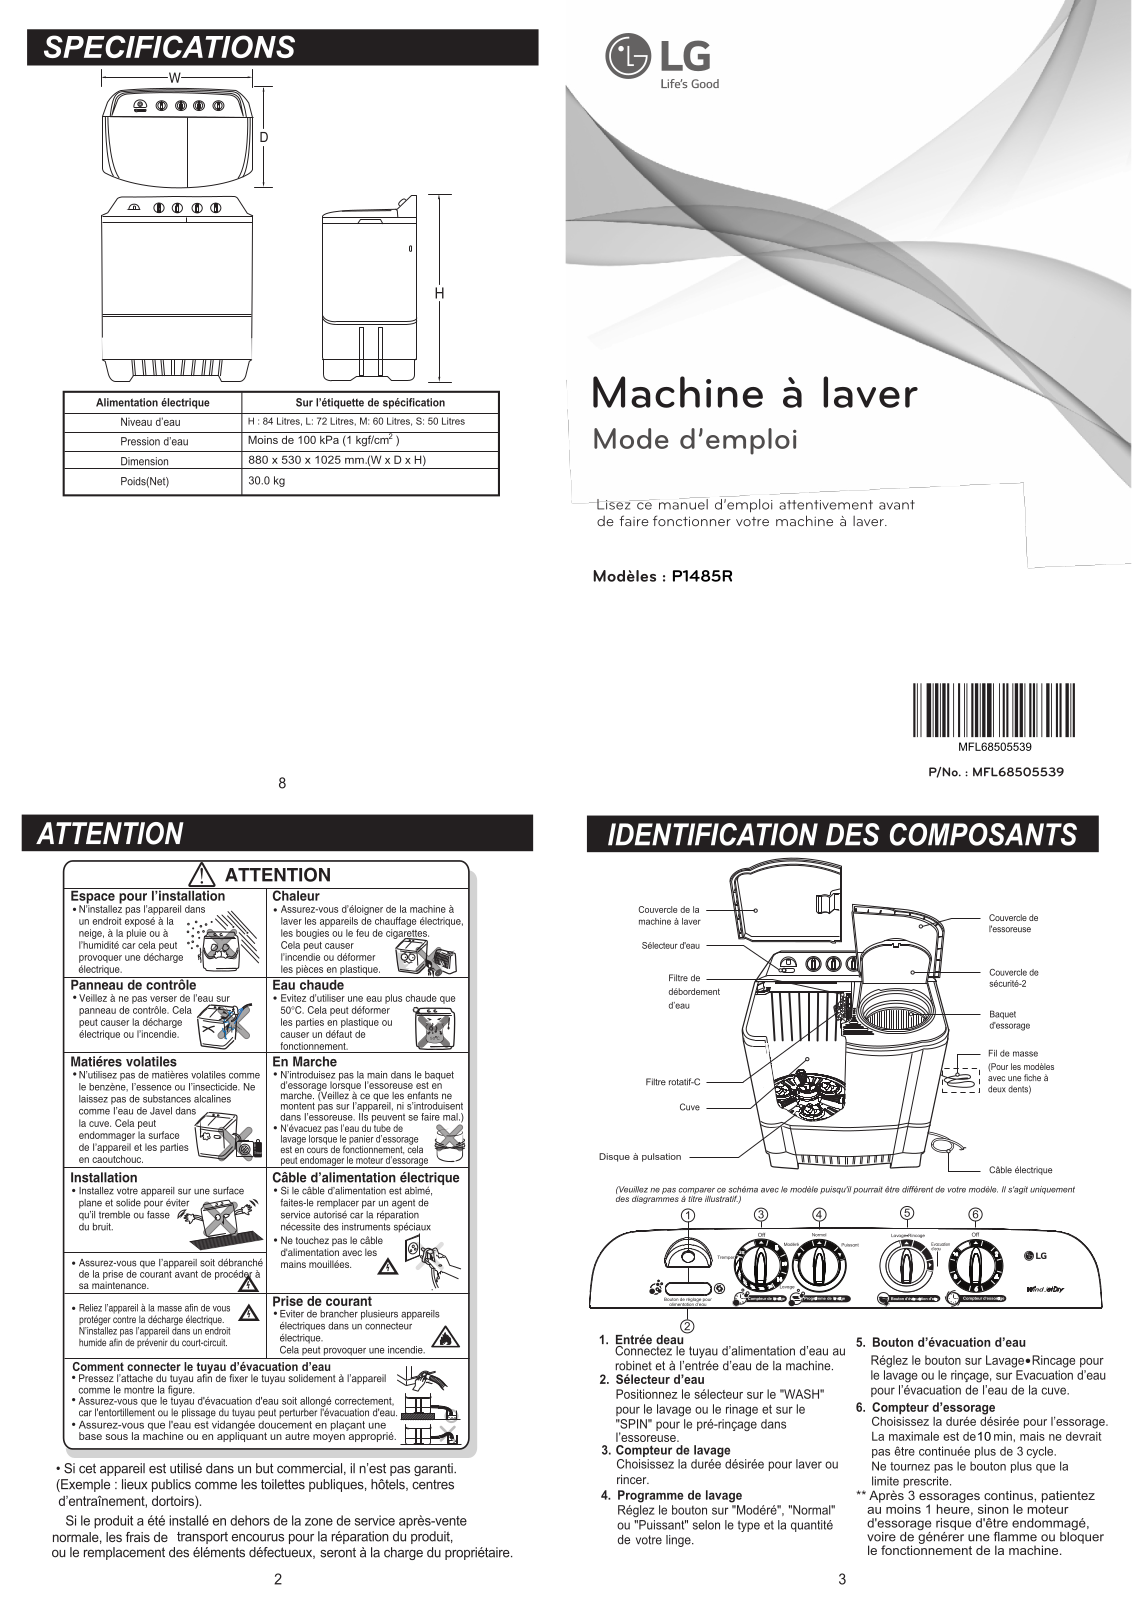 LG P1485R User manual